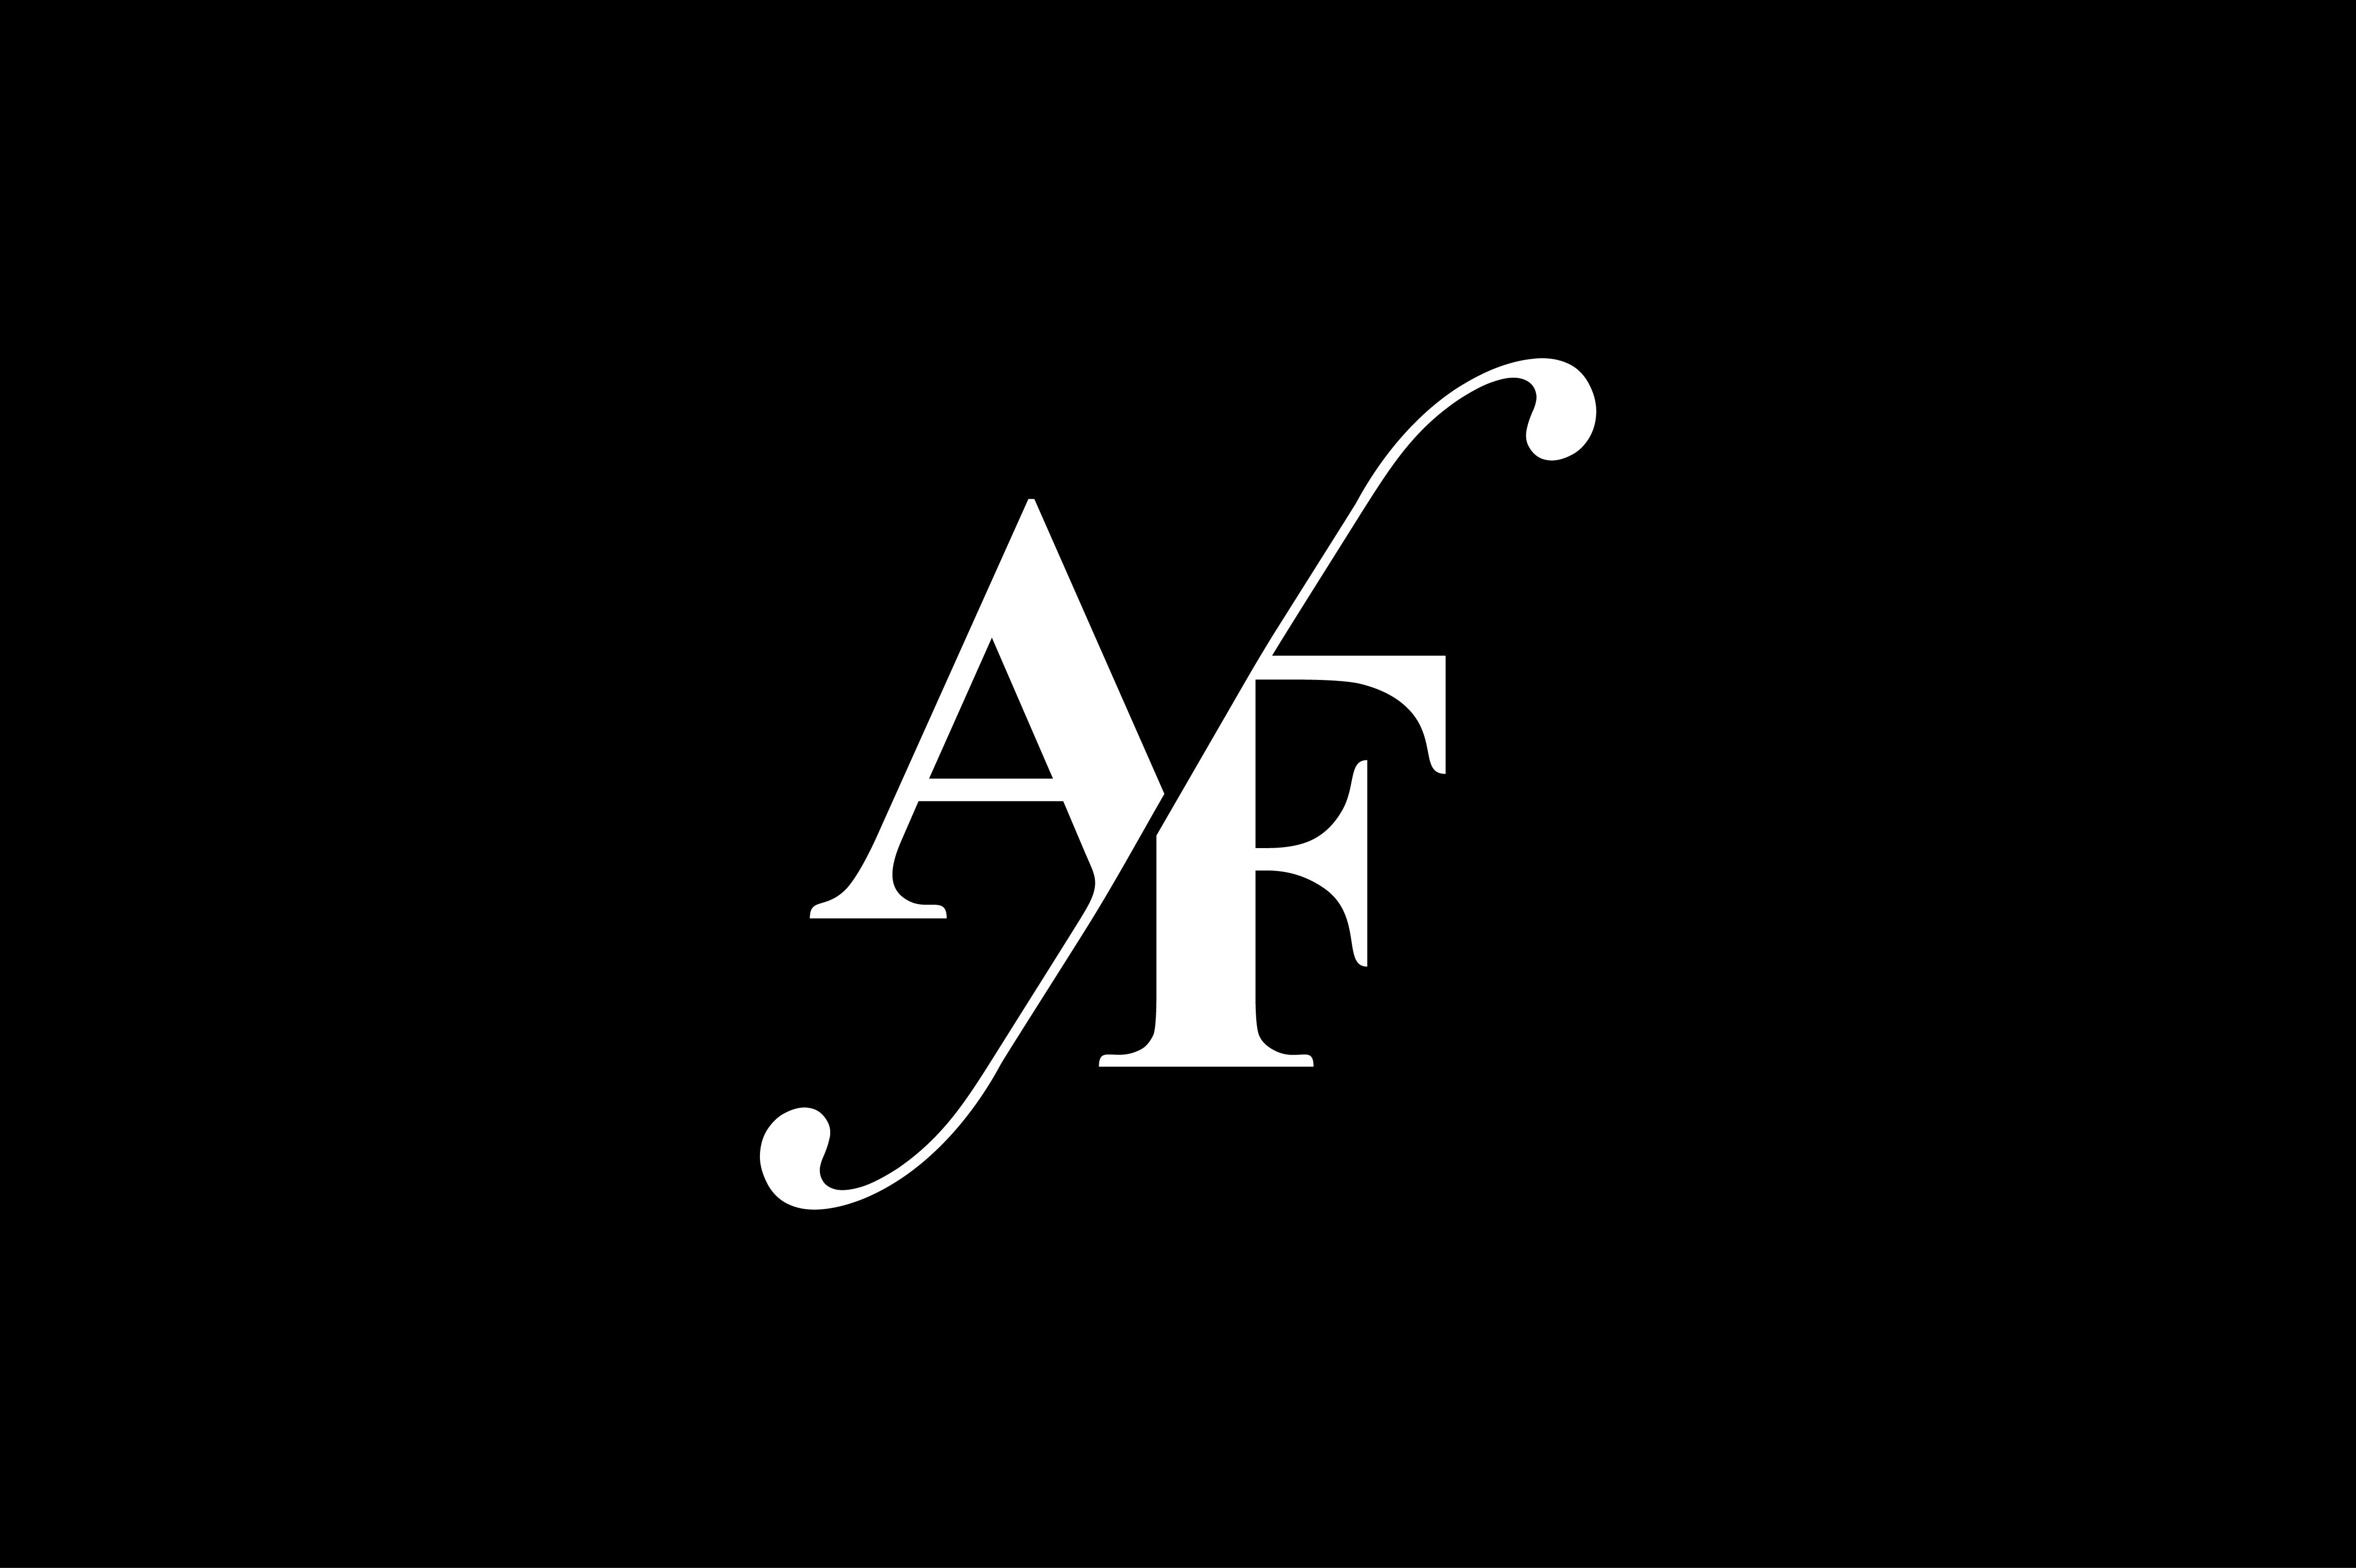 af-monogram-logo-design-by-vectorseller-thehungryjpeg